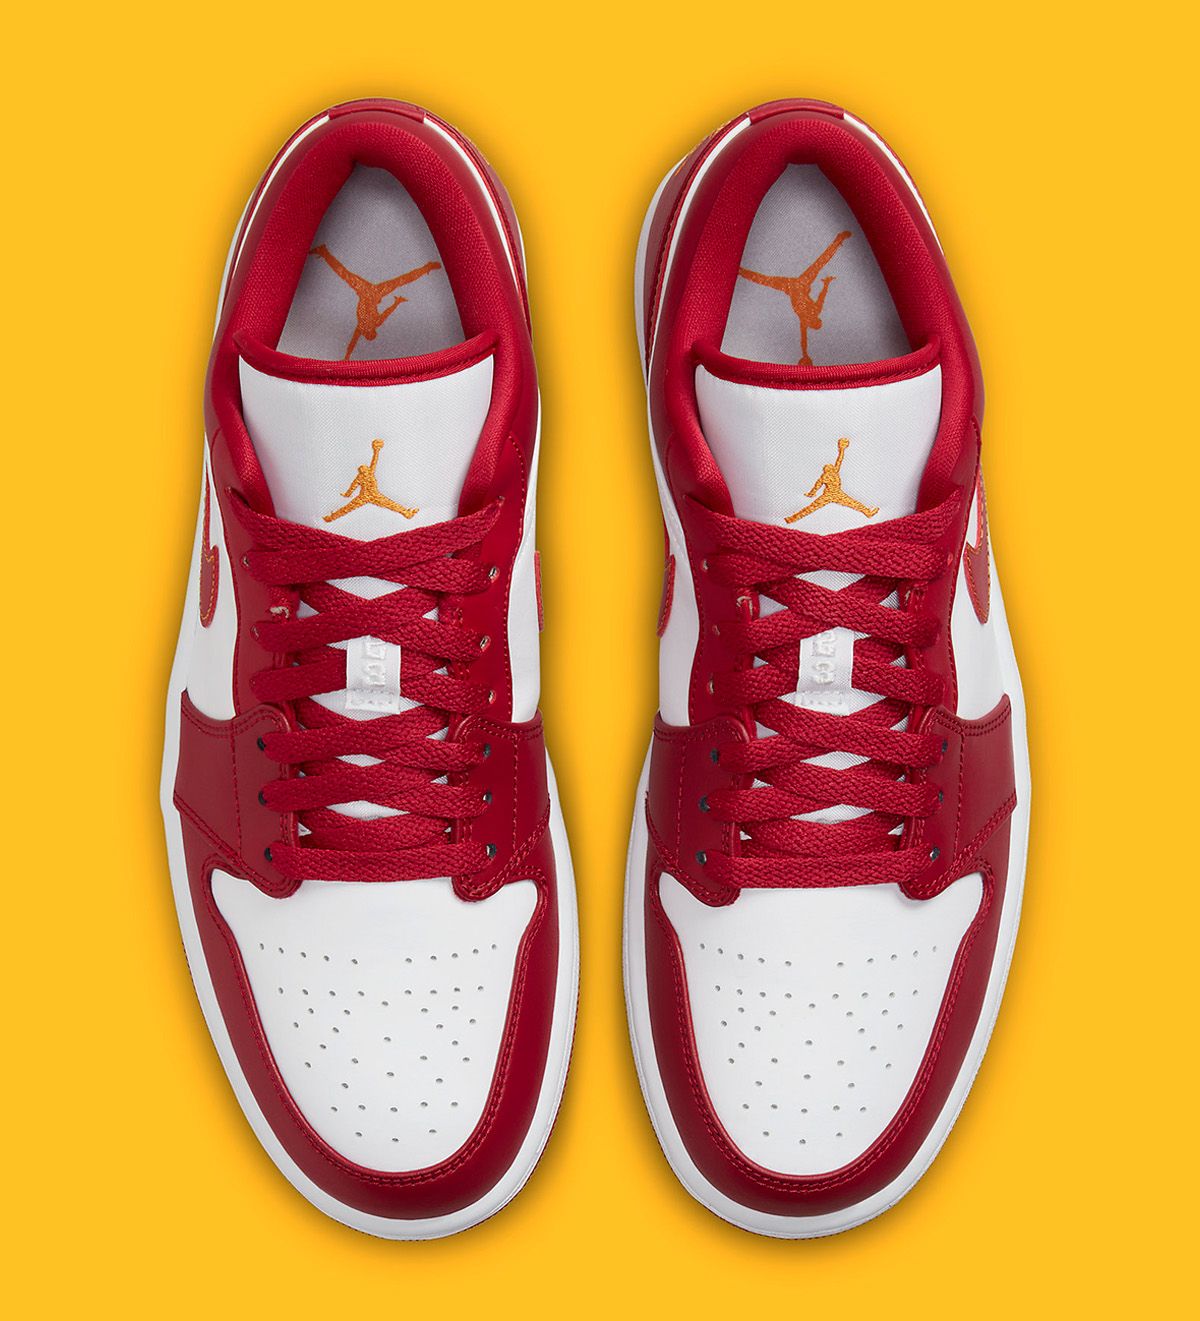 Air Jordan 1 Low “Cardinal” Arrives June 29 | House of Heat°